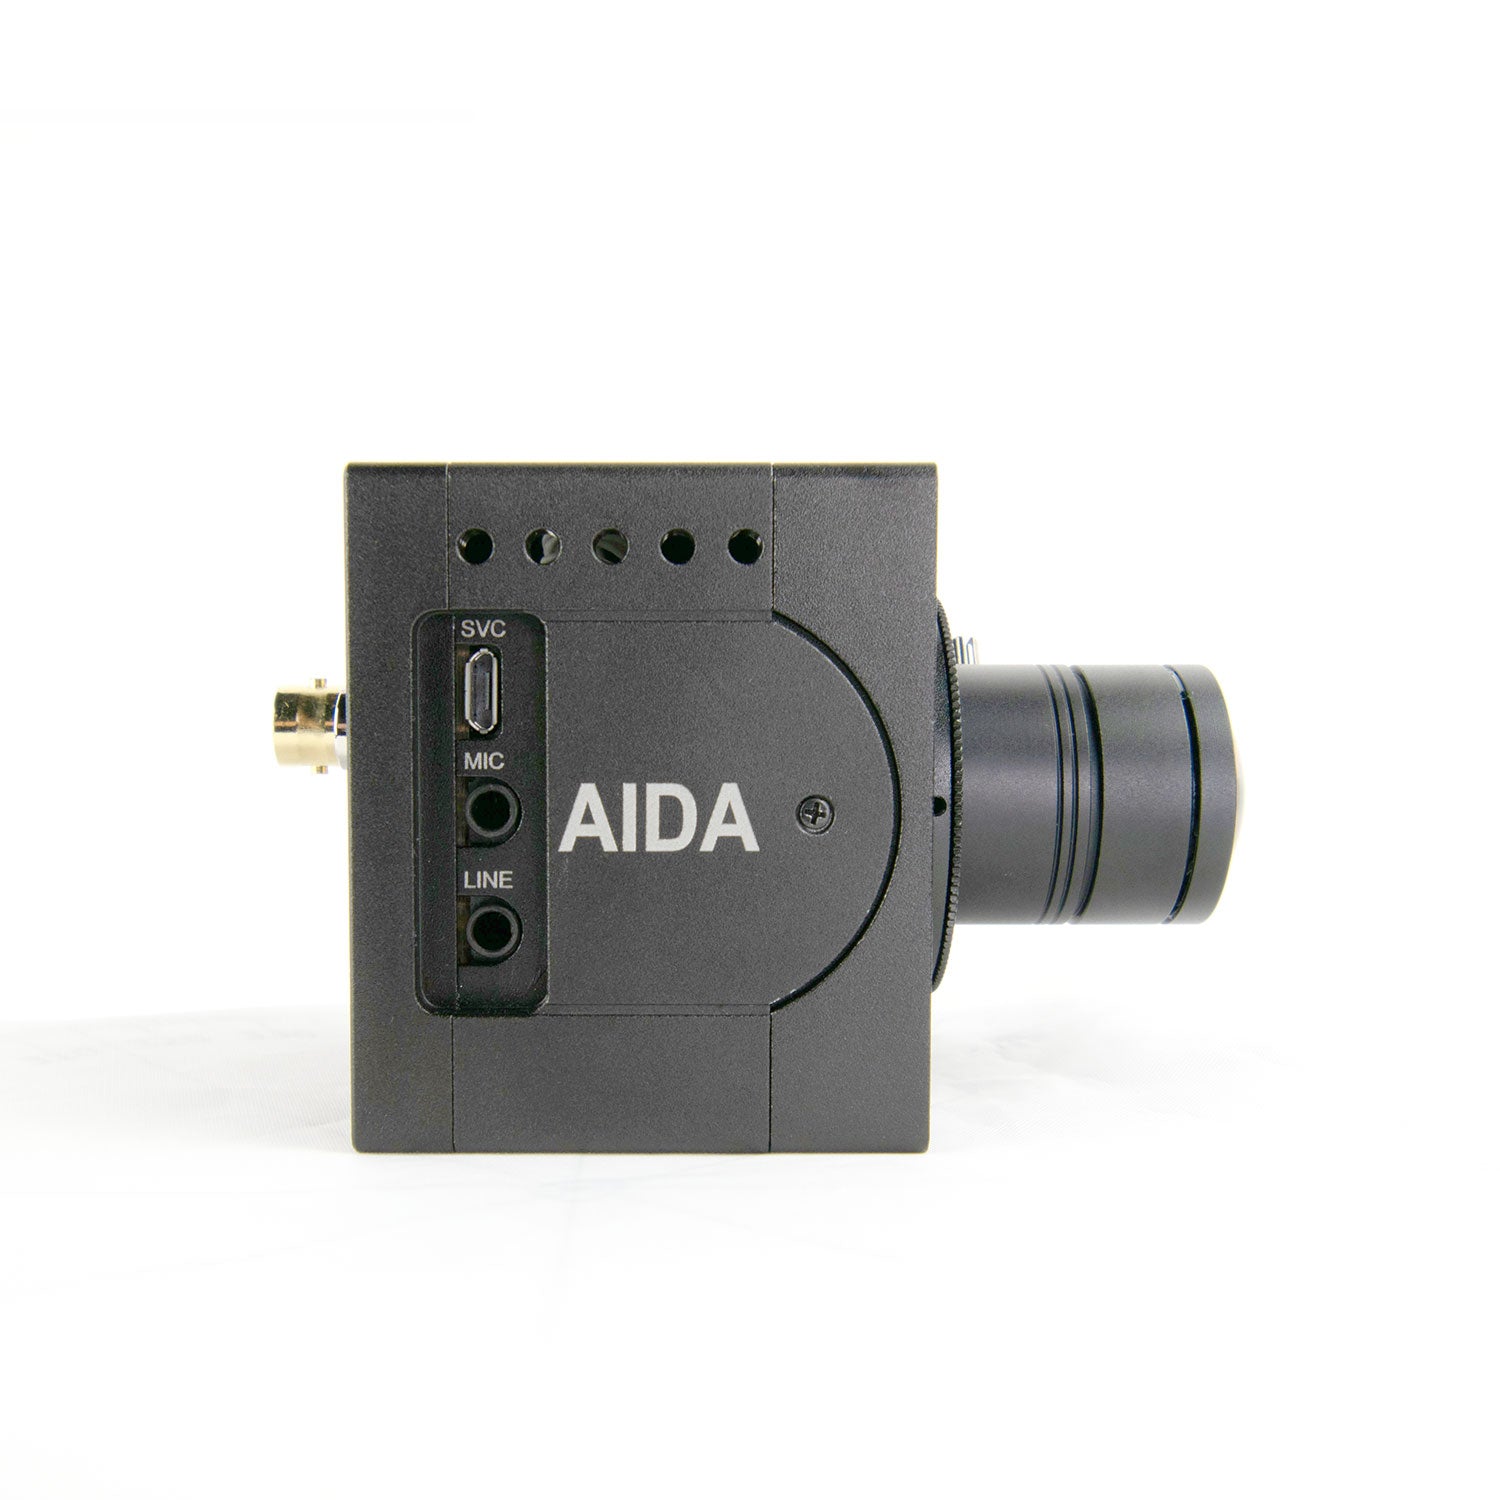 AIDA Imaging UHD6G-200 - 4K UHD 6G-SDI POV Camera, side